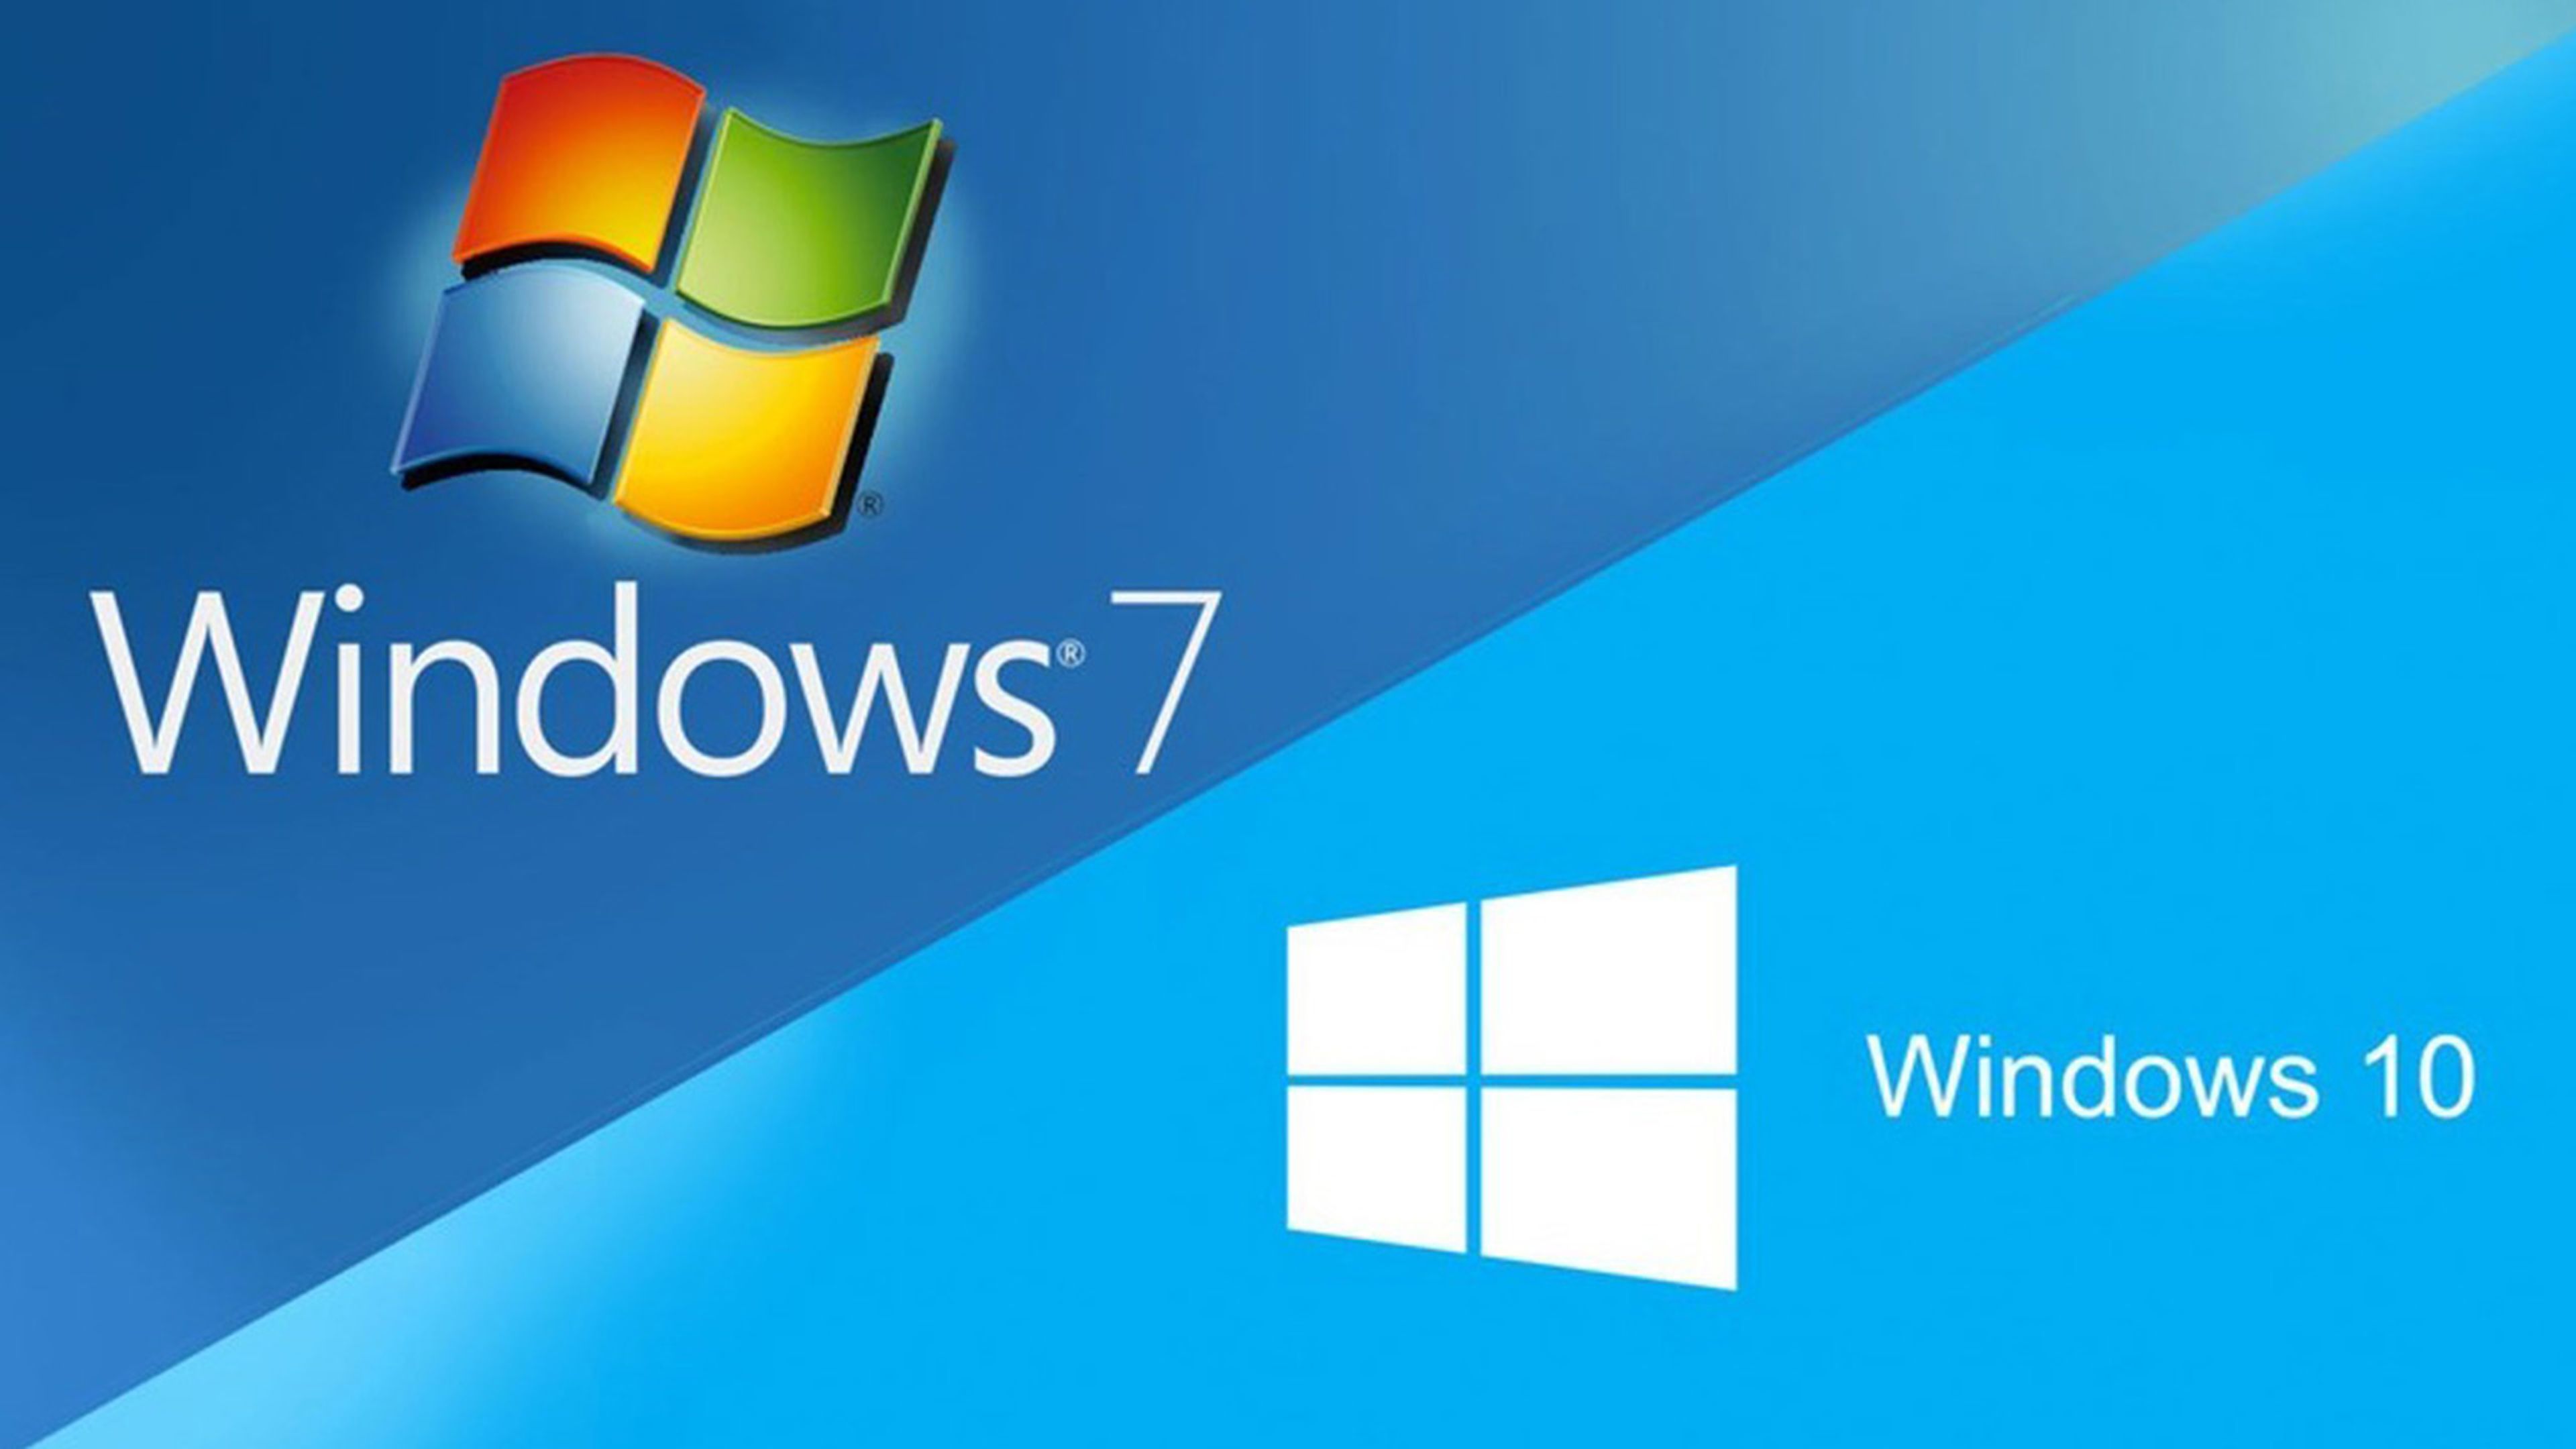 dejar sacudir objetivo Windows 7 contará con un año adicional de actualizaciones de seguridad  gratuitas si cumples estos requisitos | Computer Hoy